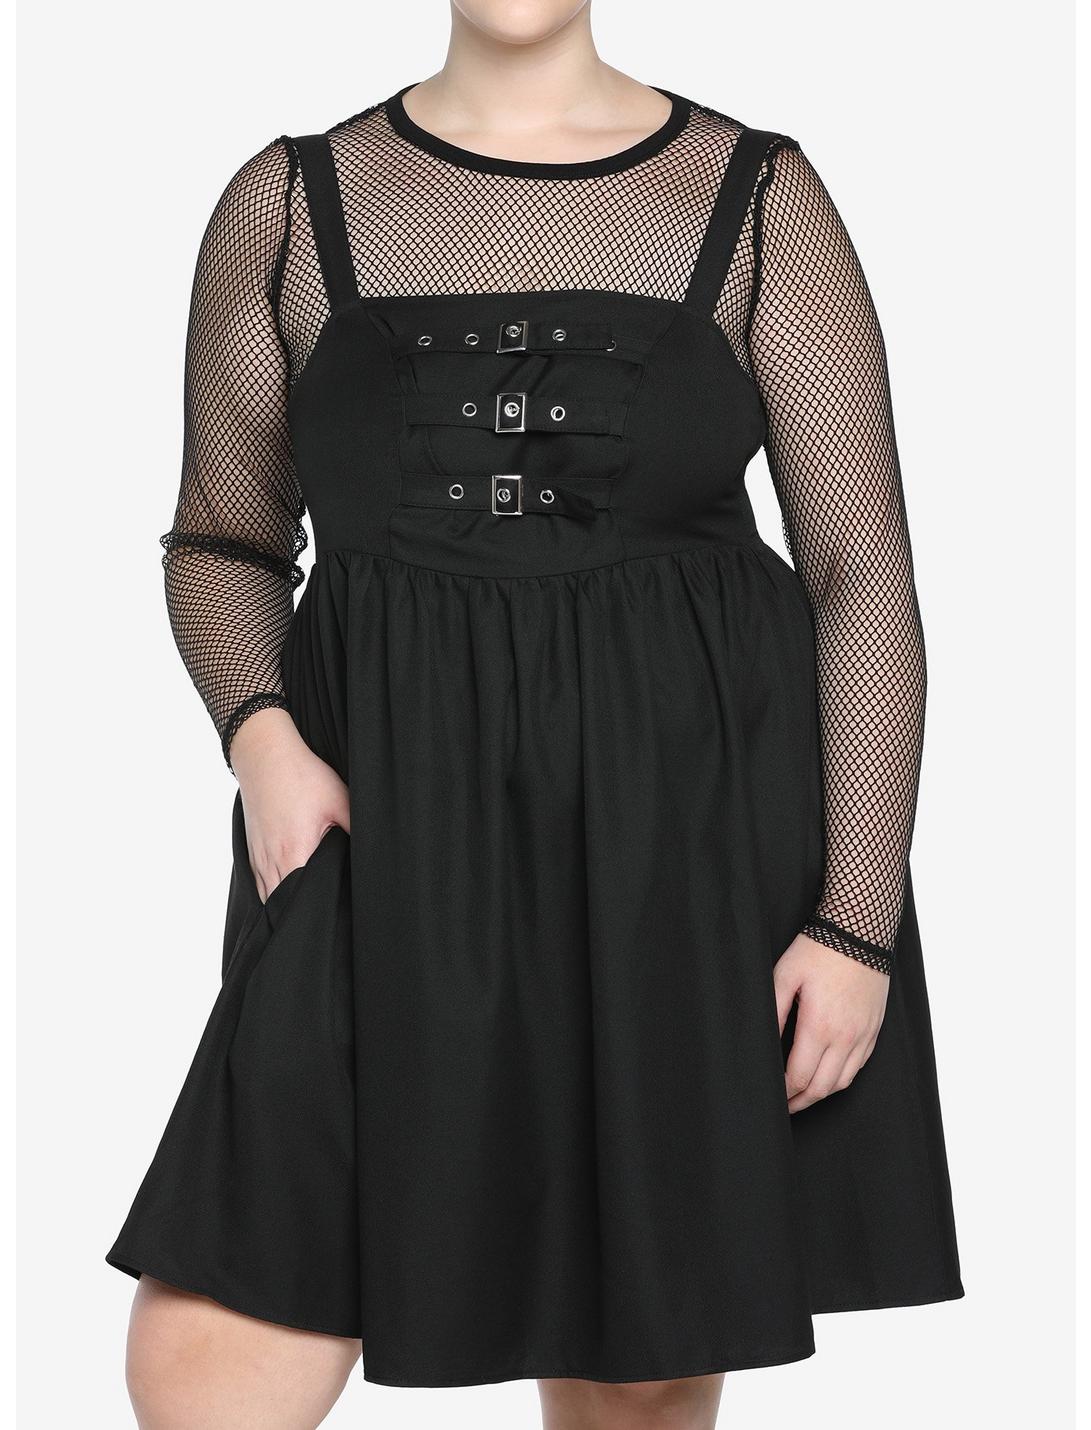 Black Multi-Buckle Front Pinafore Dress Plus Size, BLACK, hi-res